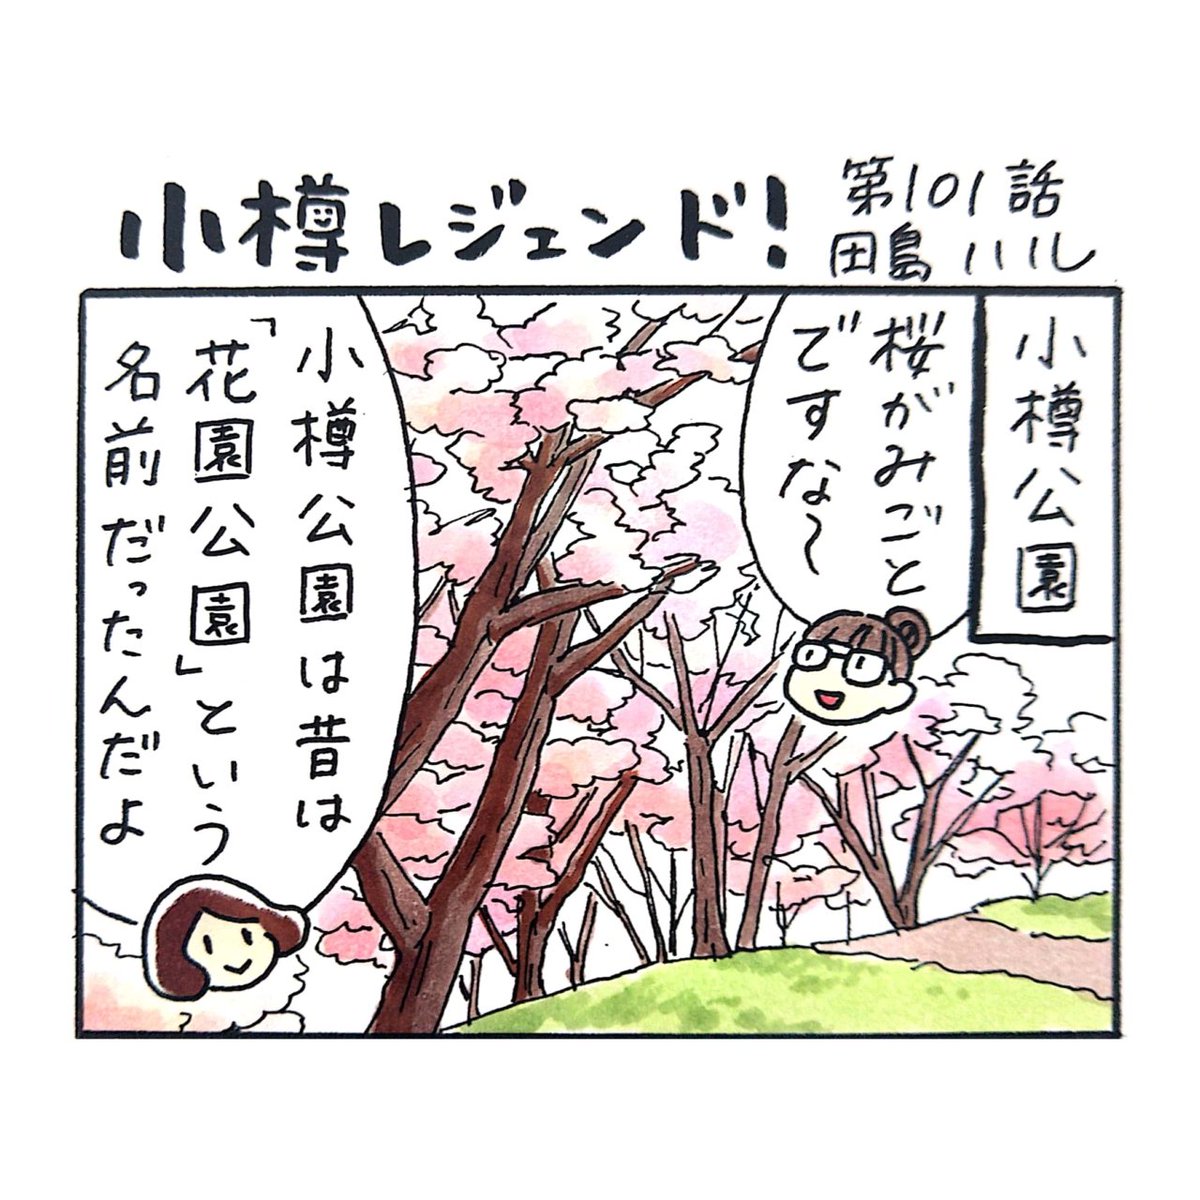 小樽のフリーペーパー「小樽チャンネルmagazine」4月号発行されました。漫画 #小樽レジェンド !第101話載ってます。
エゾヤマザクラやソメイヨシノなどの桜の開花が進んできた小樽公園。その昔にここで売られていた、今でも人気の和菓子とは?🌸
https://t.co/5V79NRNRVv 